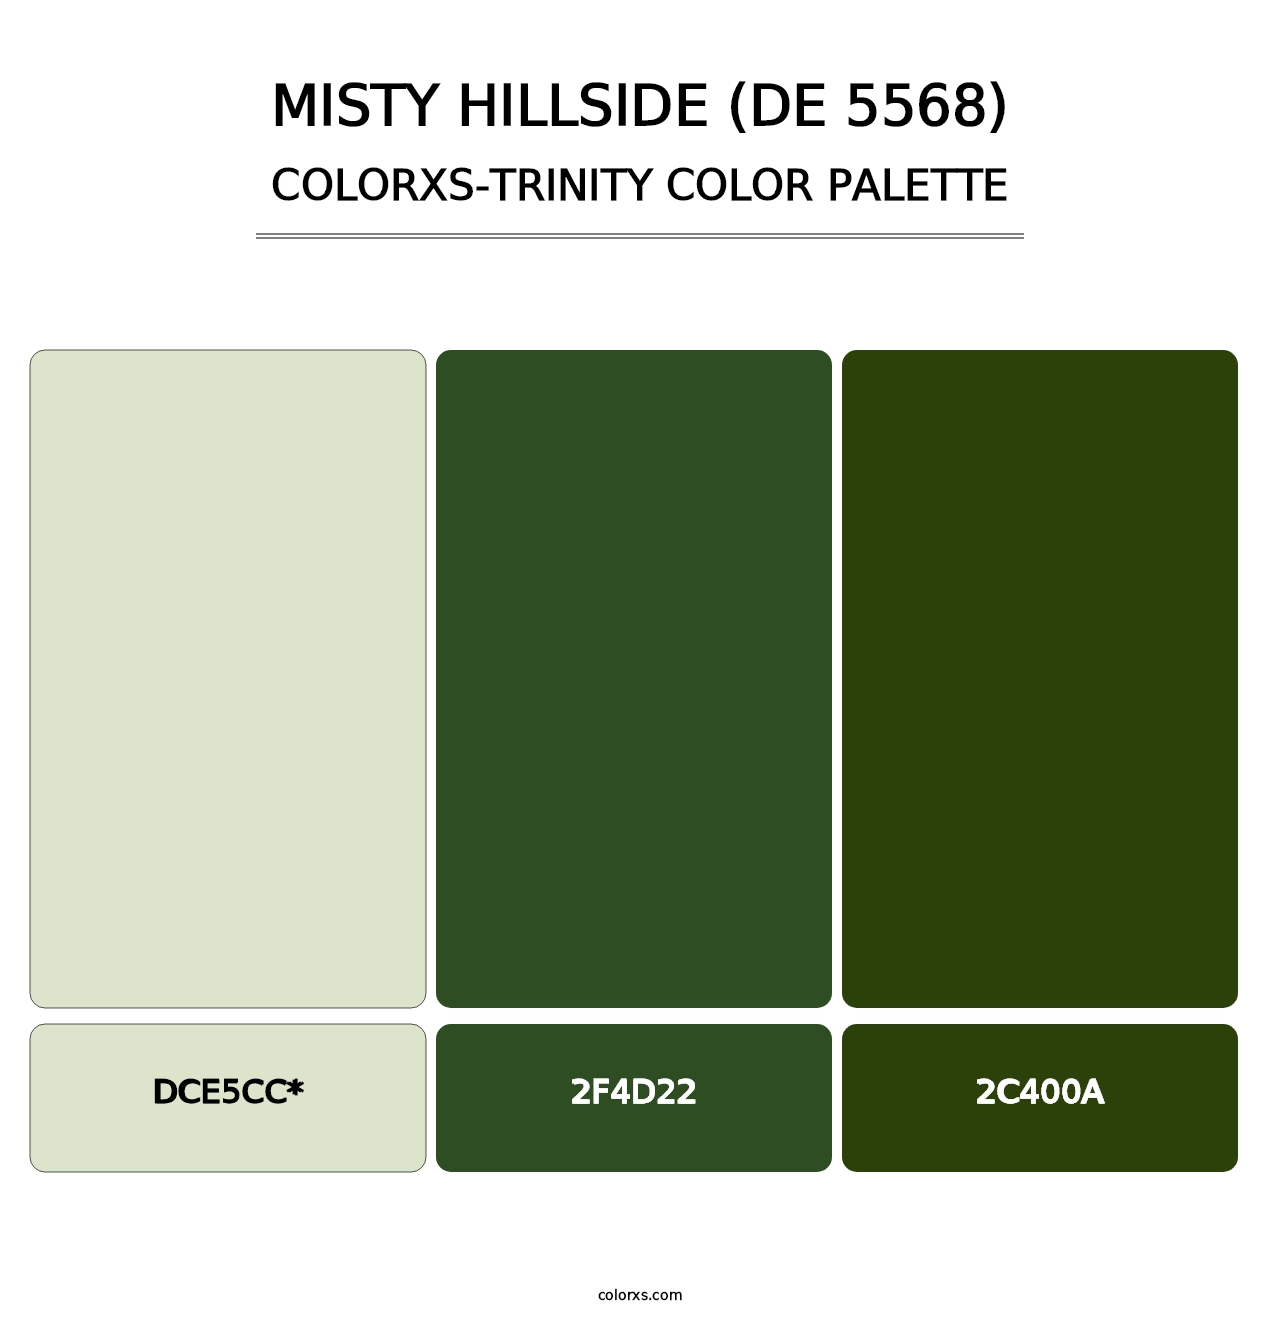 Misty Hillside (DE 5568) - Colorxs Trinity Palette